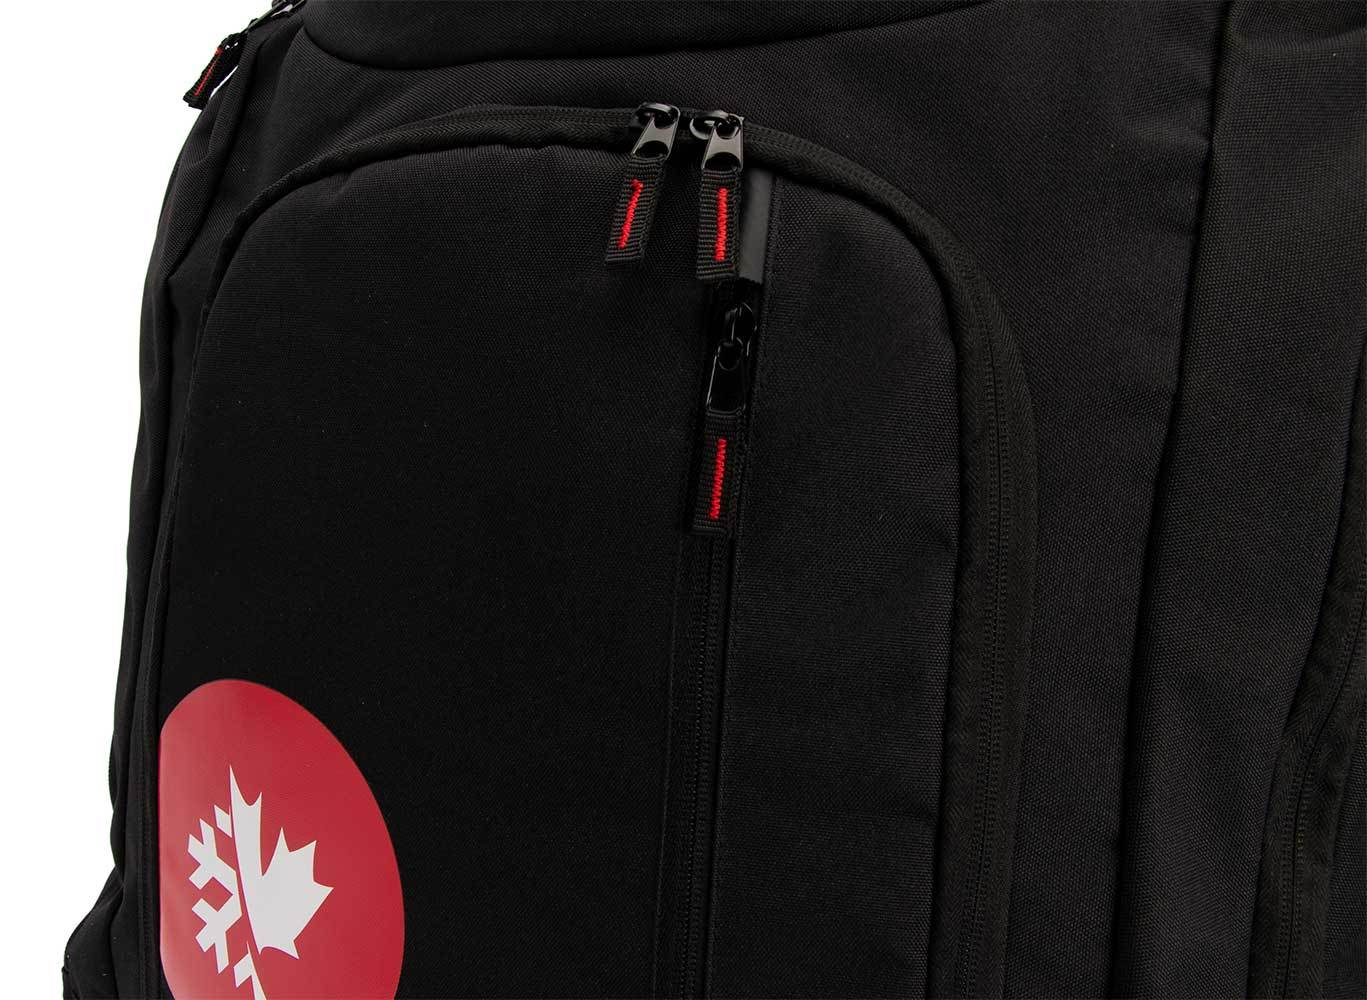 Skiis & Biikes Beast Equipment Backpack